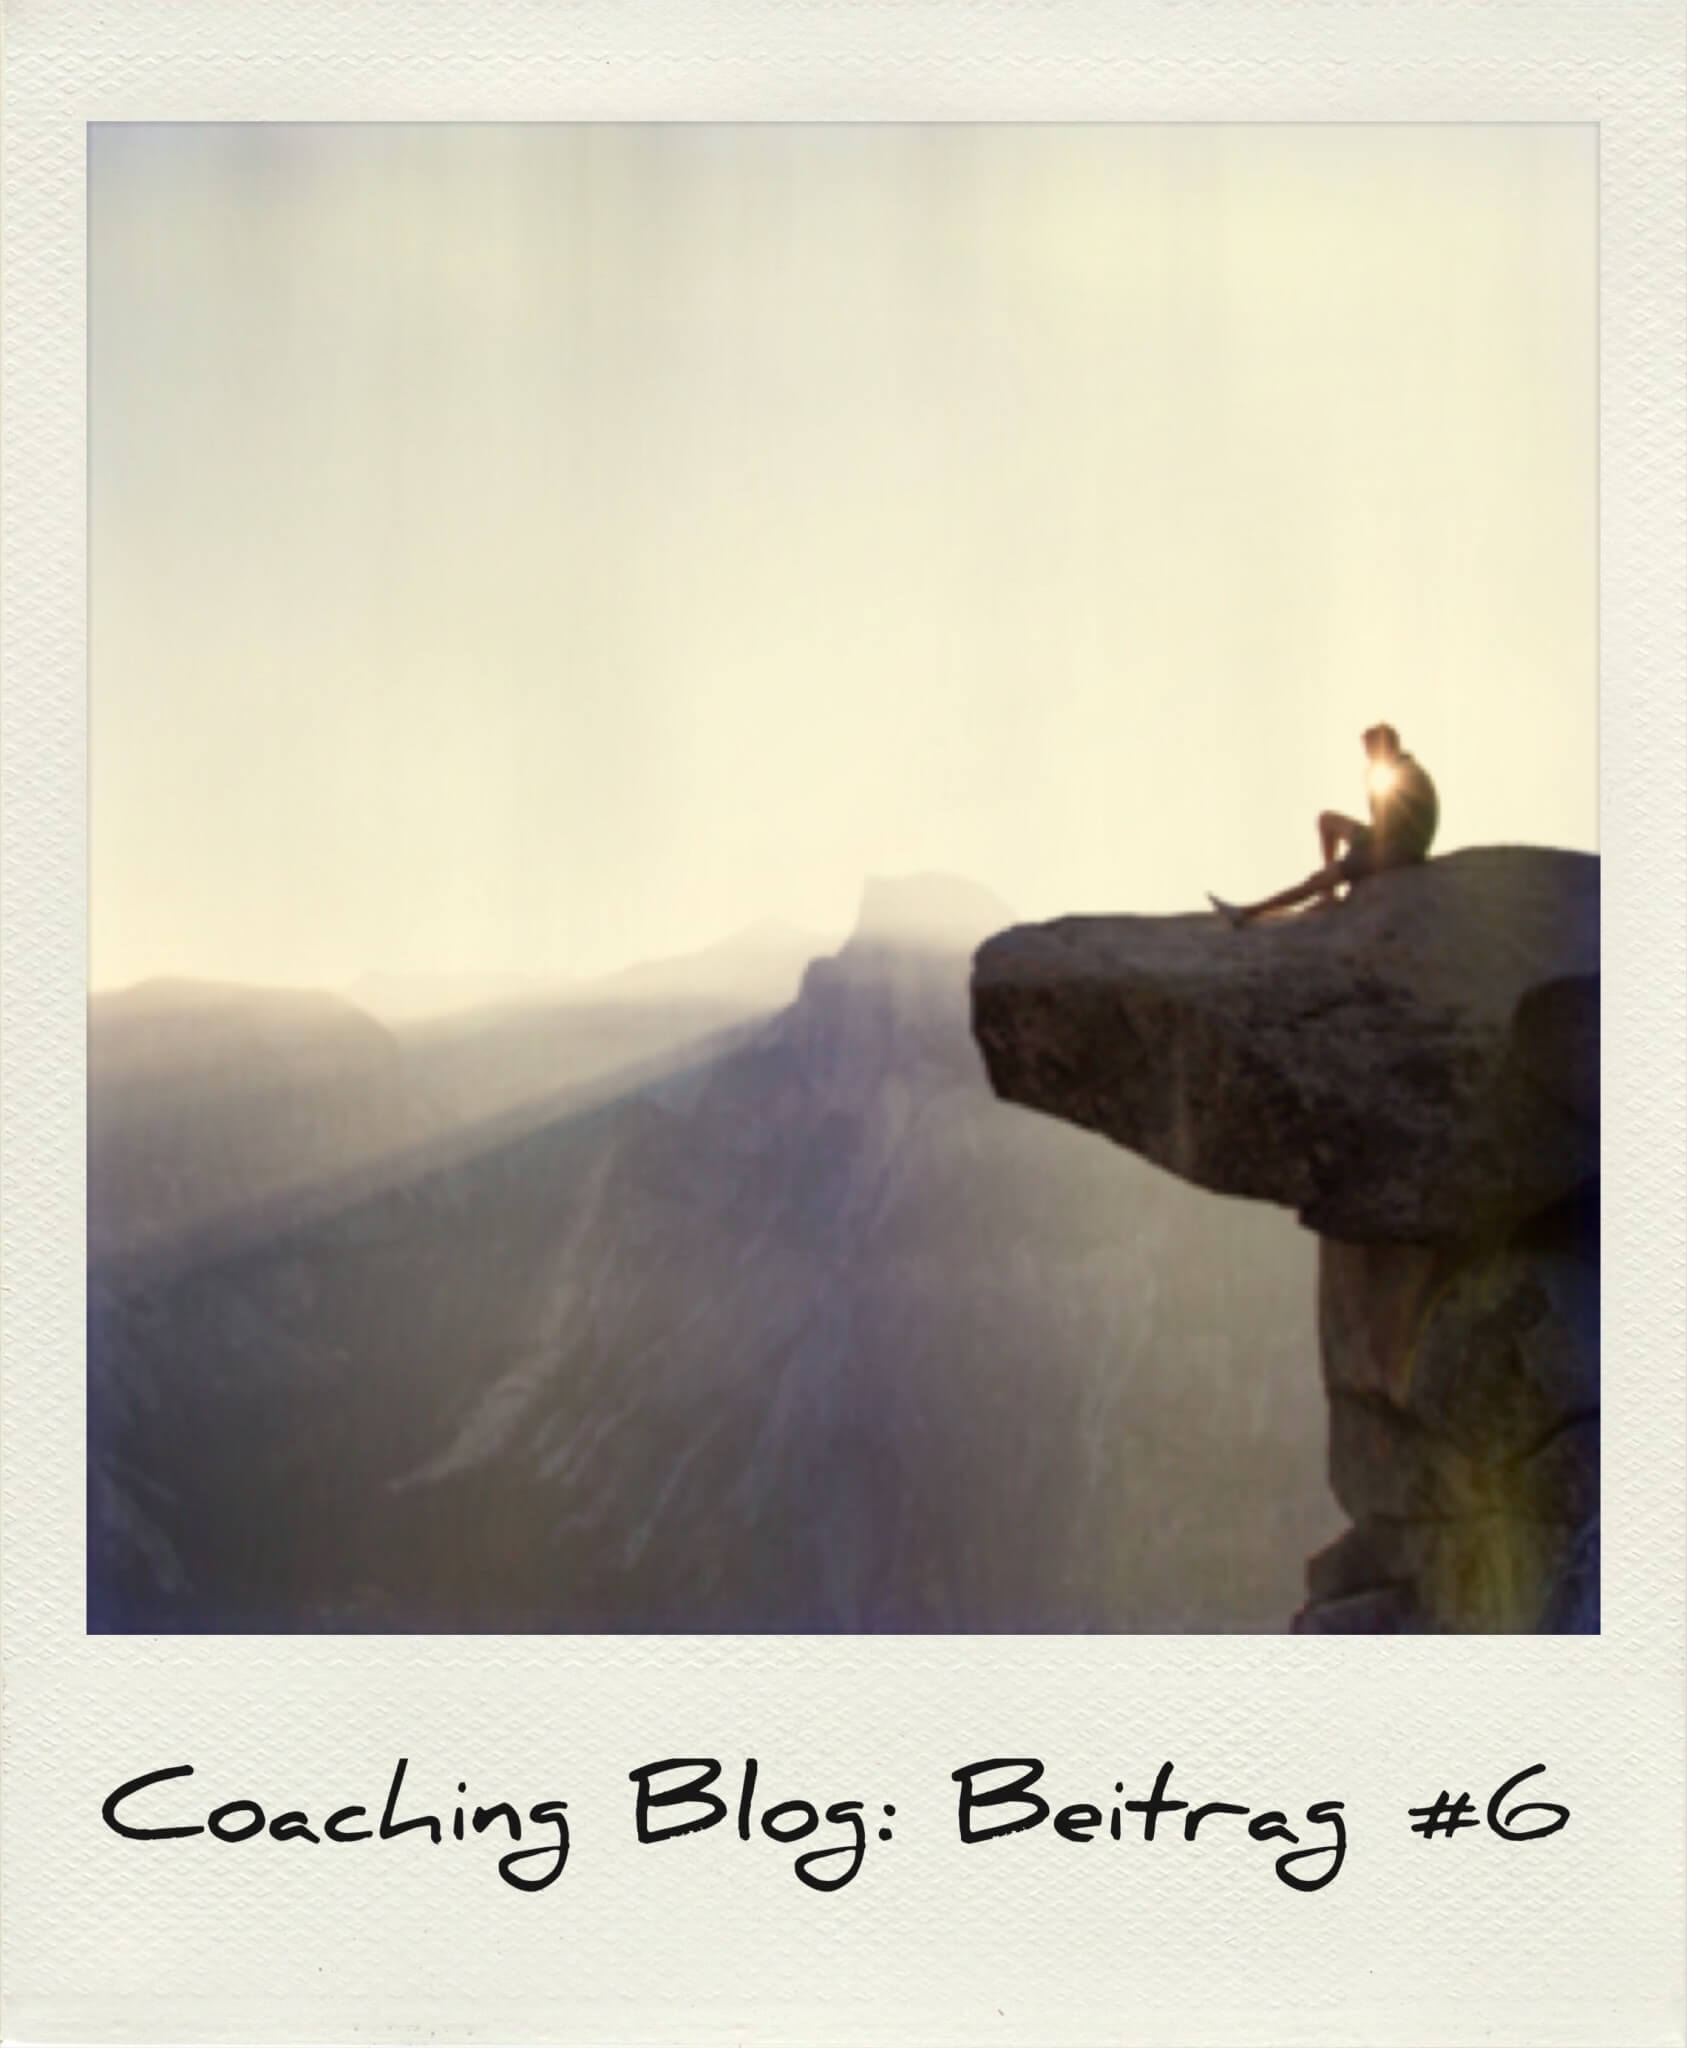 Coaching Blog, Life Coaching Laura Seiler Berlin